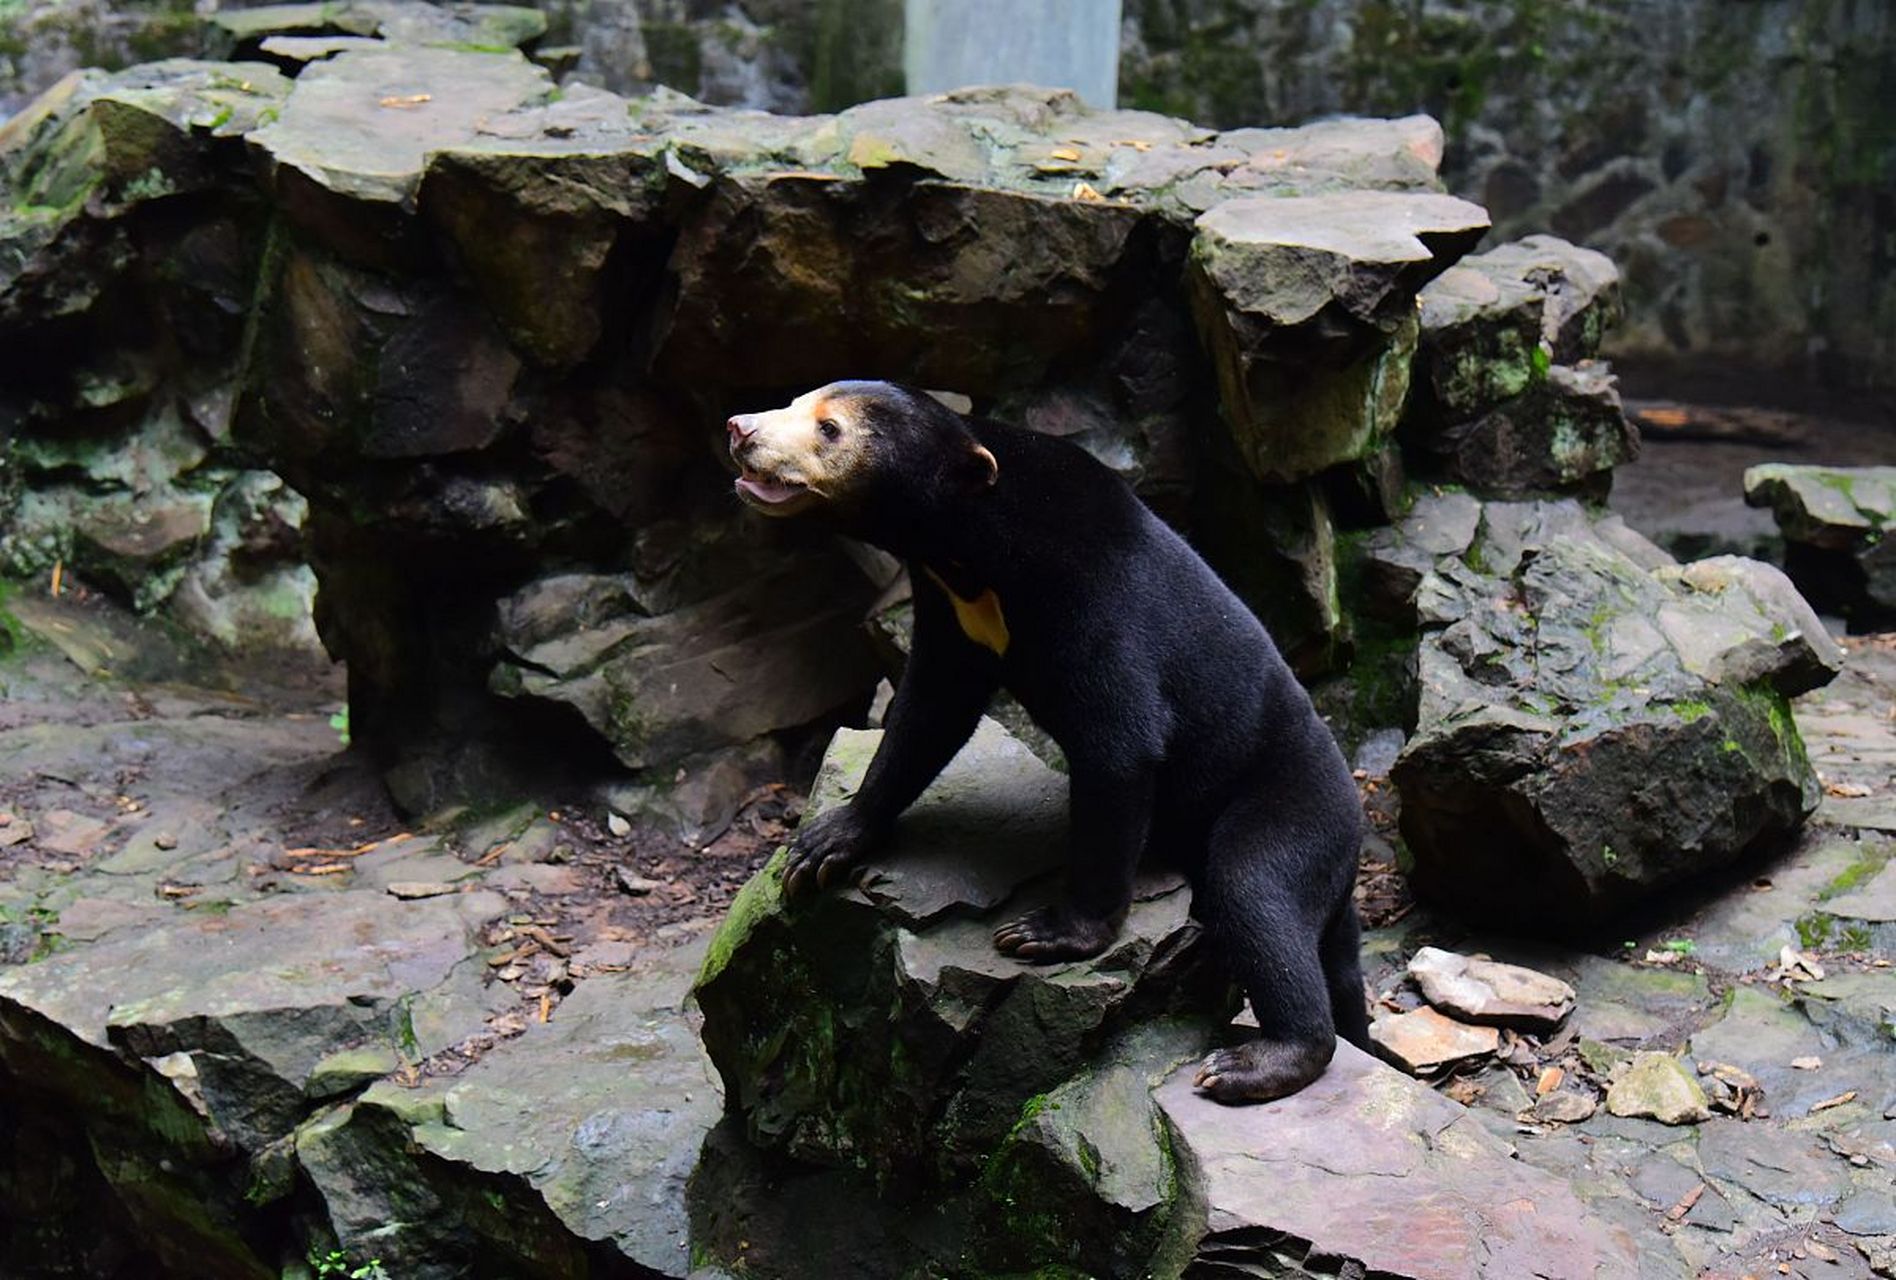 马来熊也叫椰子熊,是一种体型巨大的棕色熊